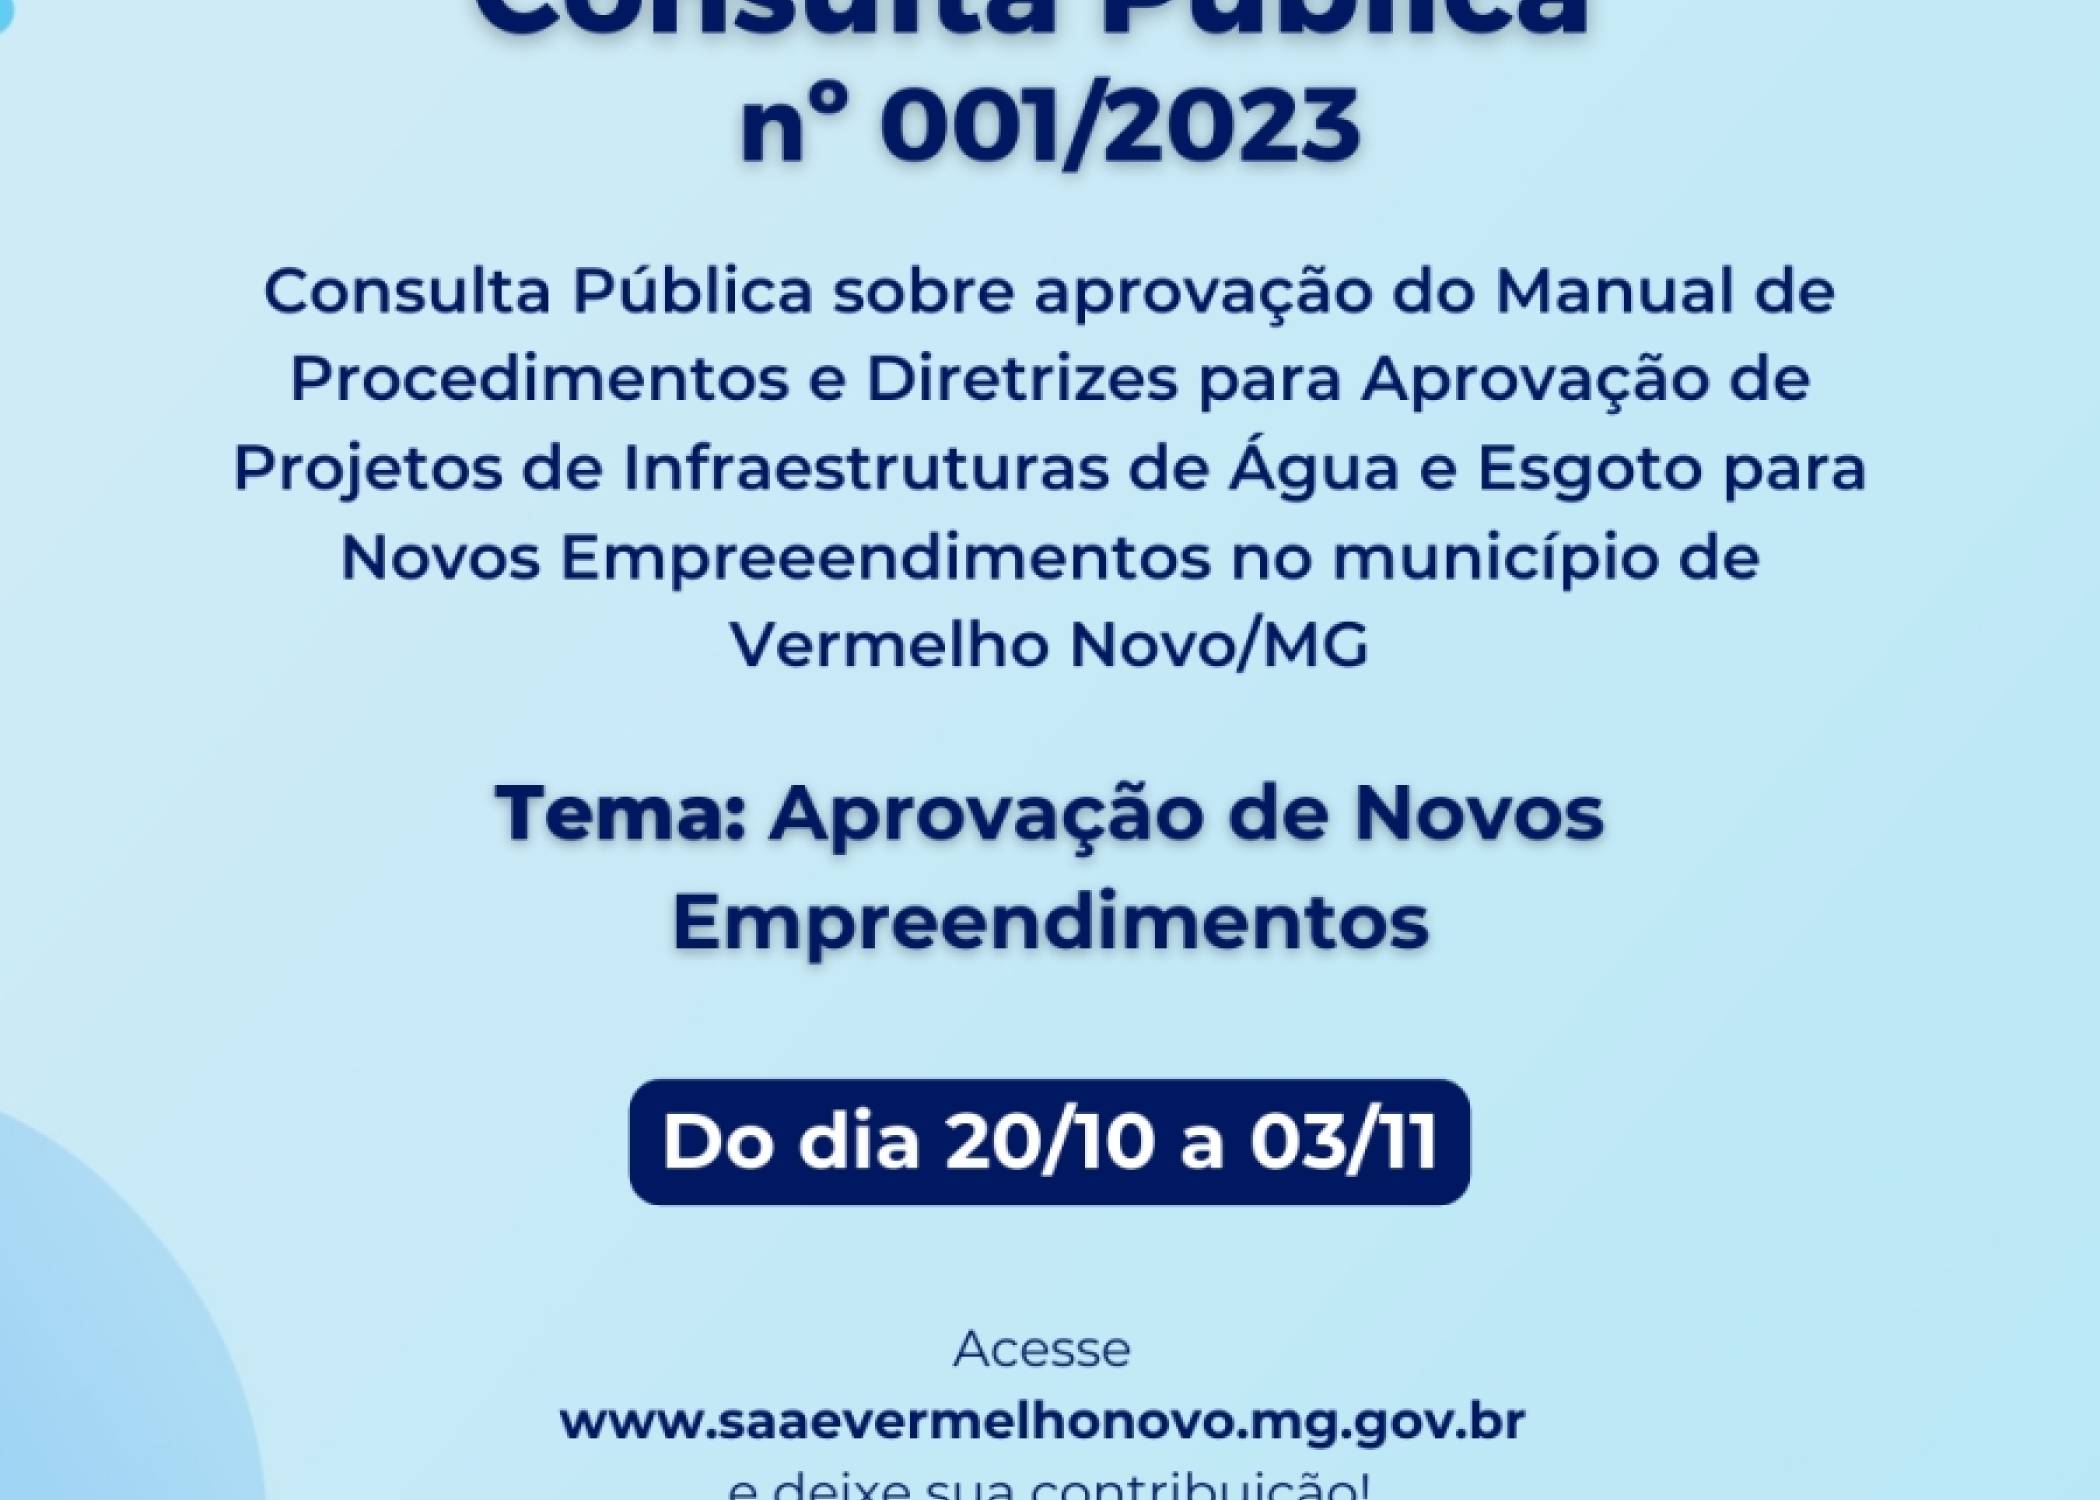 Consulta Pública Nº 001/2023